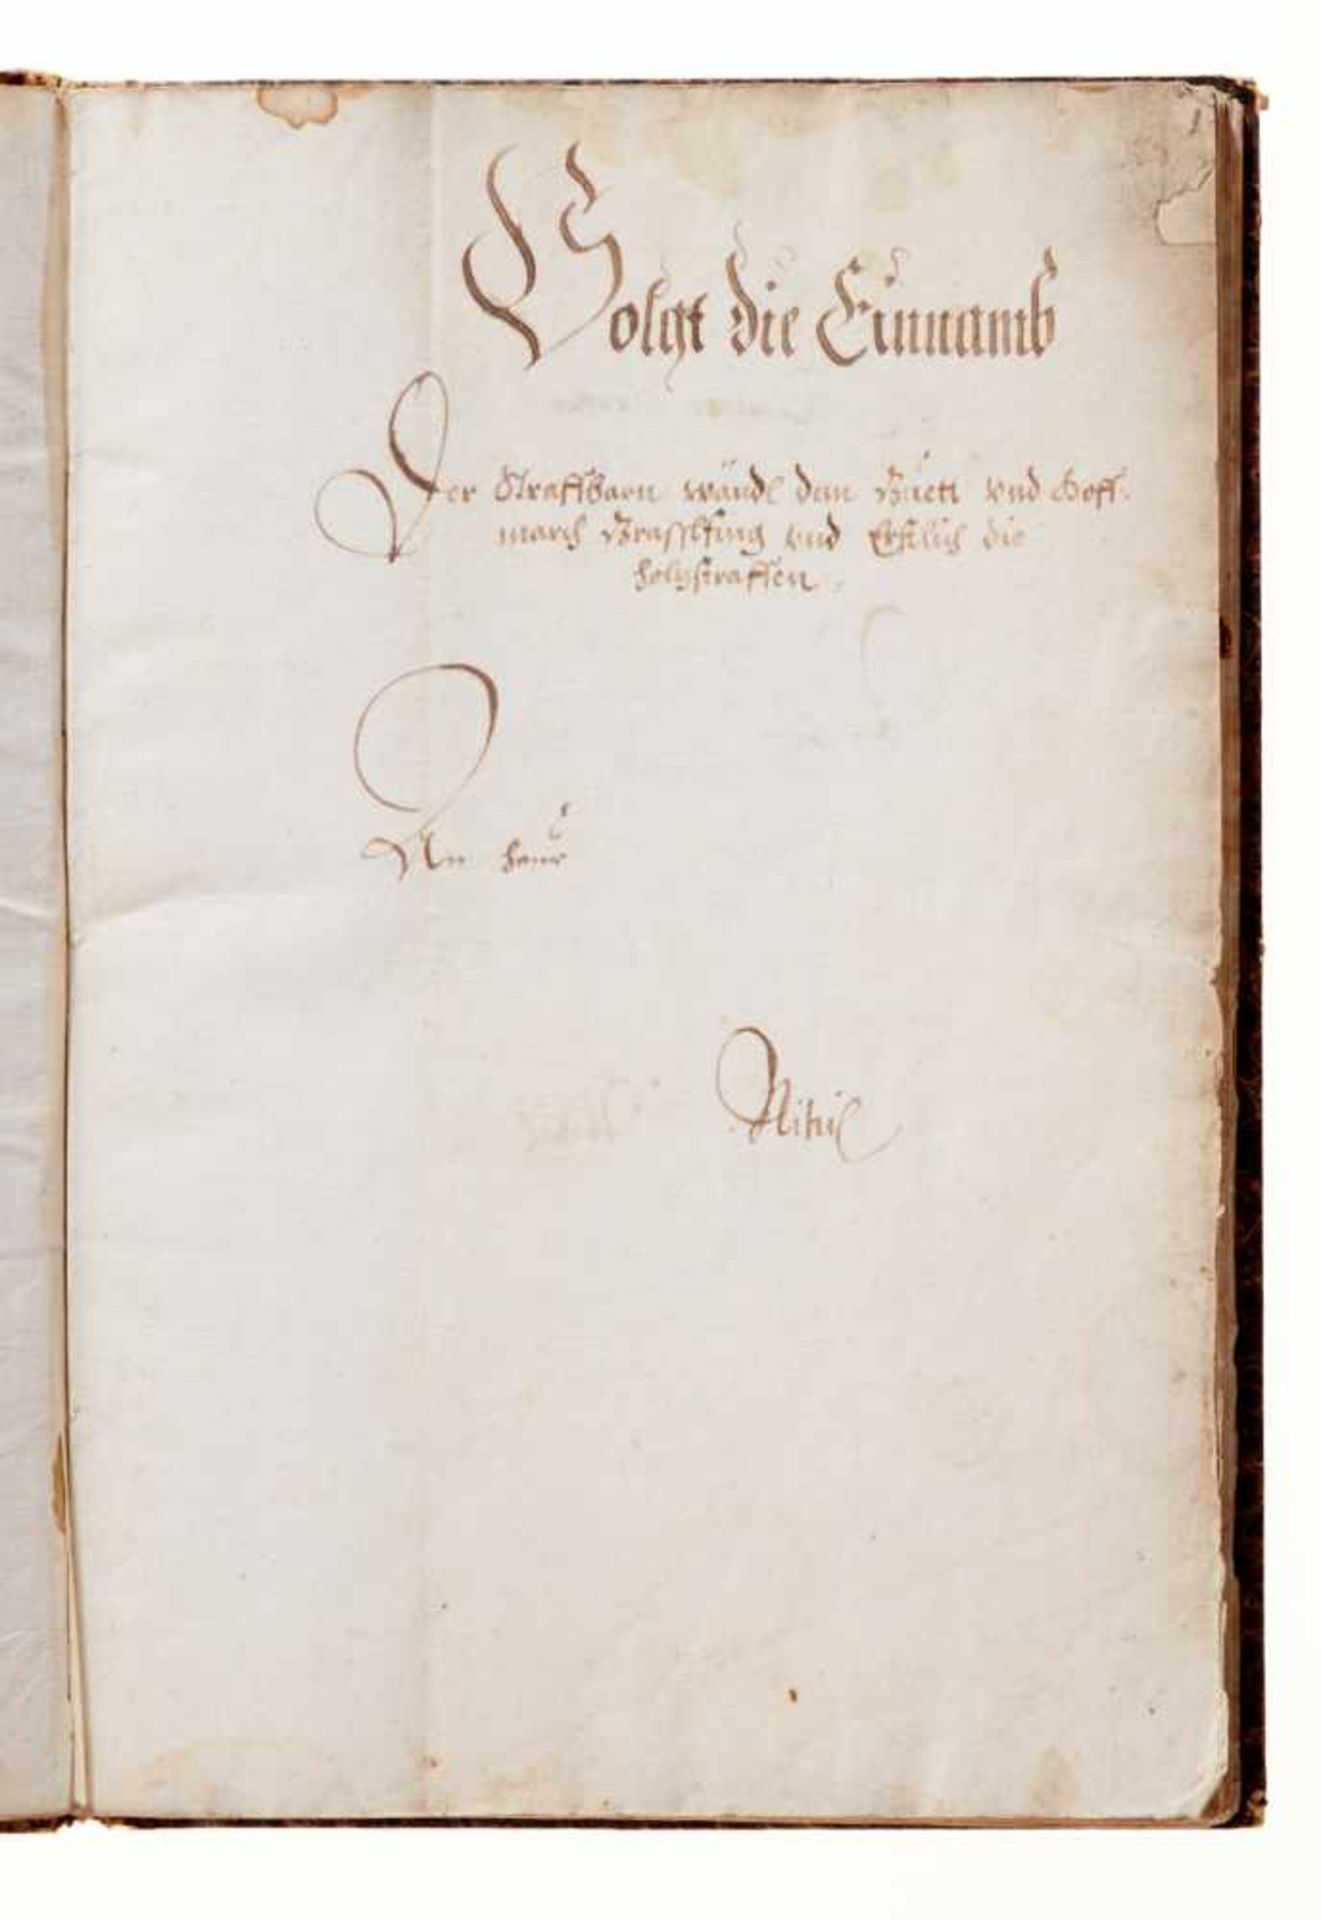 Grasslfing "Hauß Rechnung". Deutsche Handschrift auf Papier.Dat. Graßlfing, 1. 5. 1640 - 30. 4. - Bild 3 aus 5